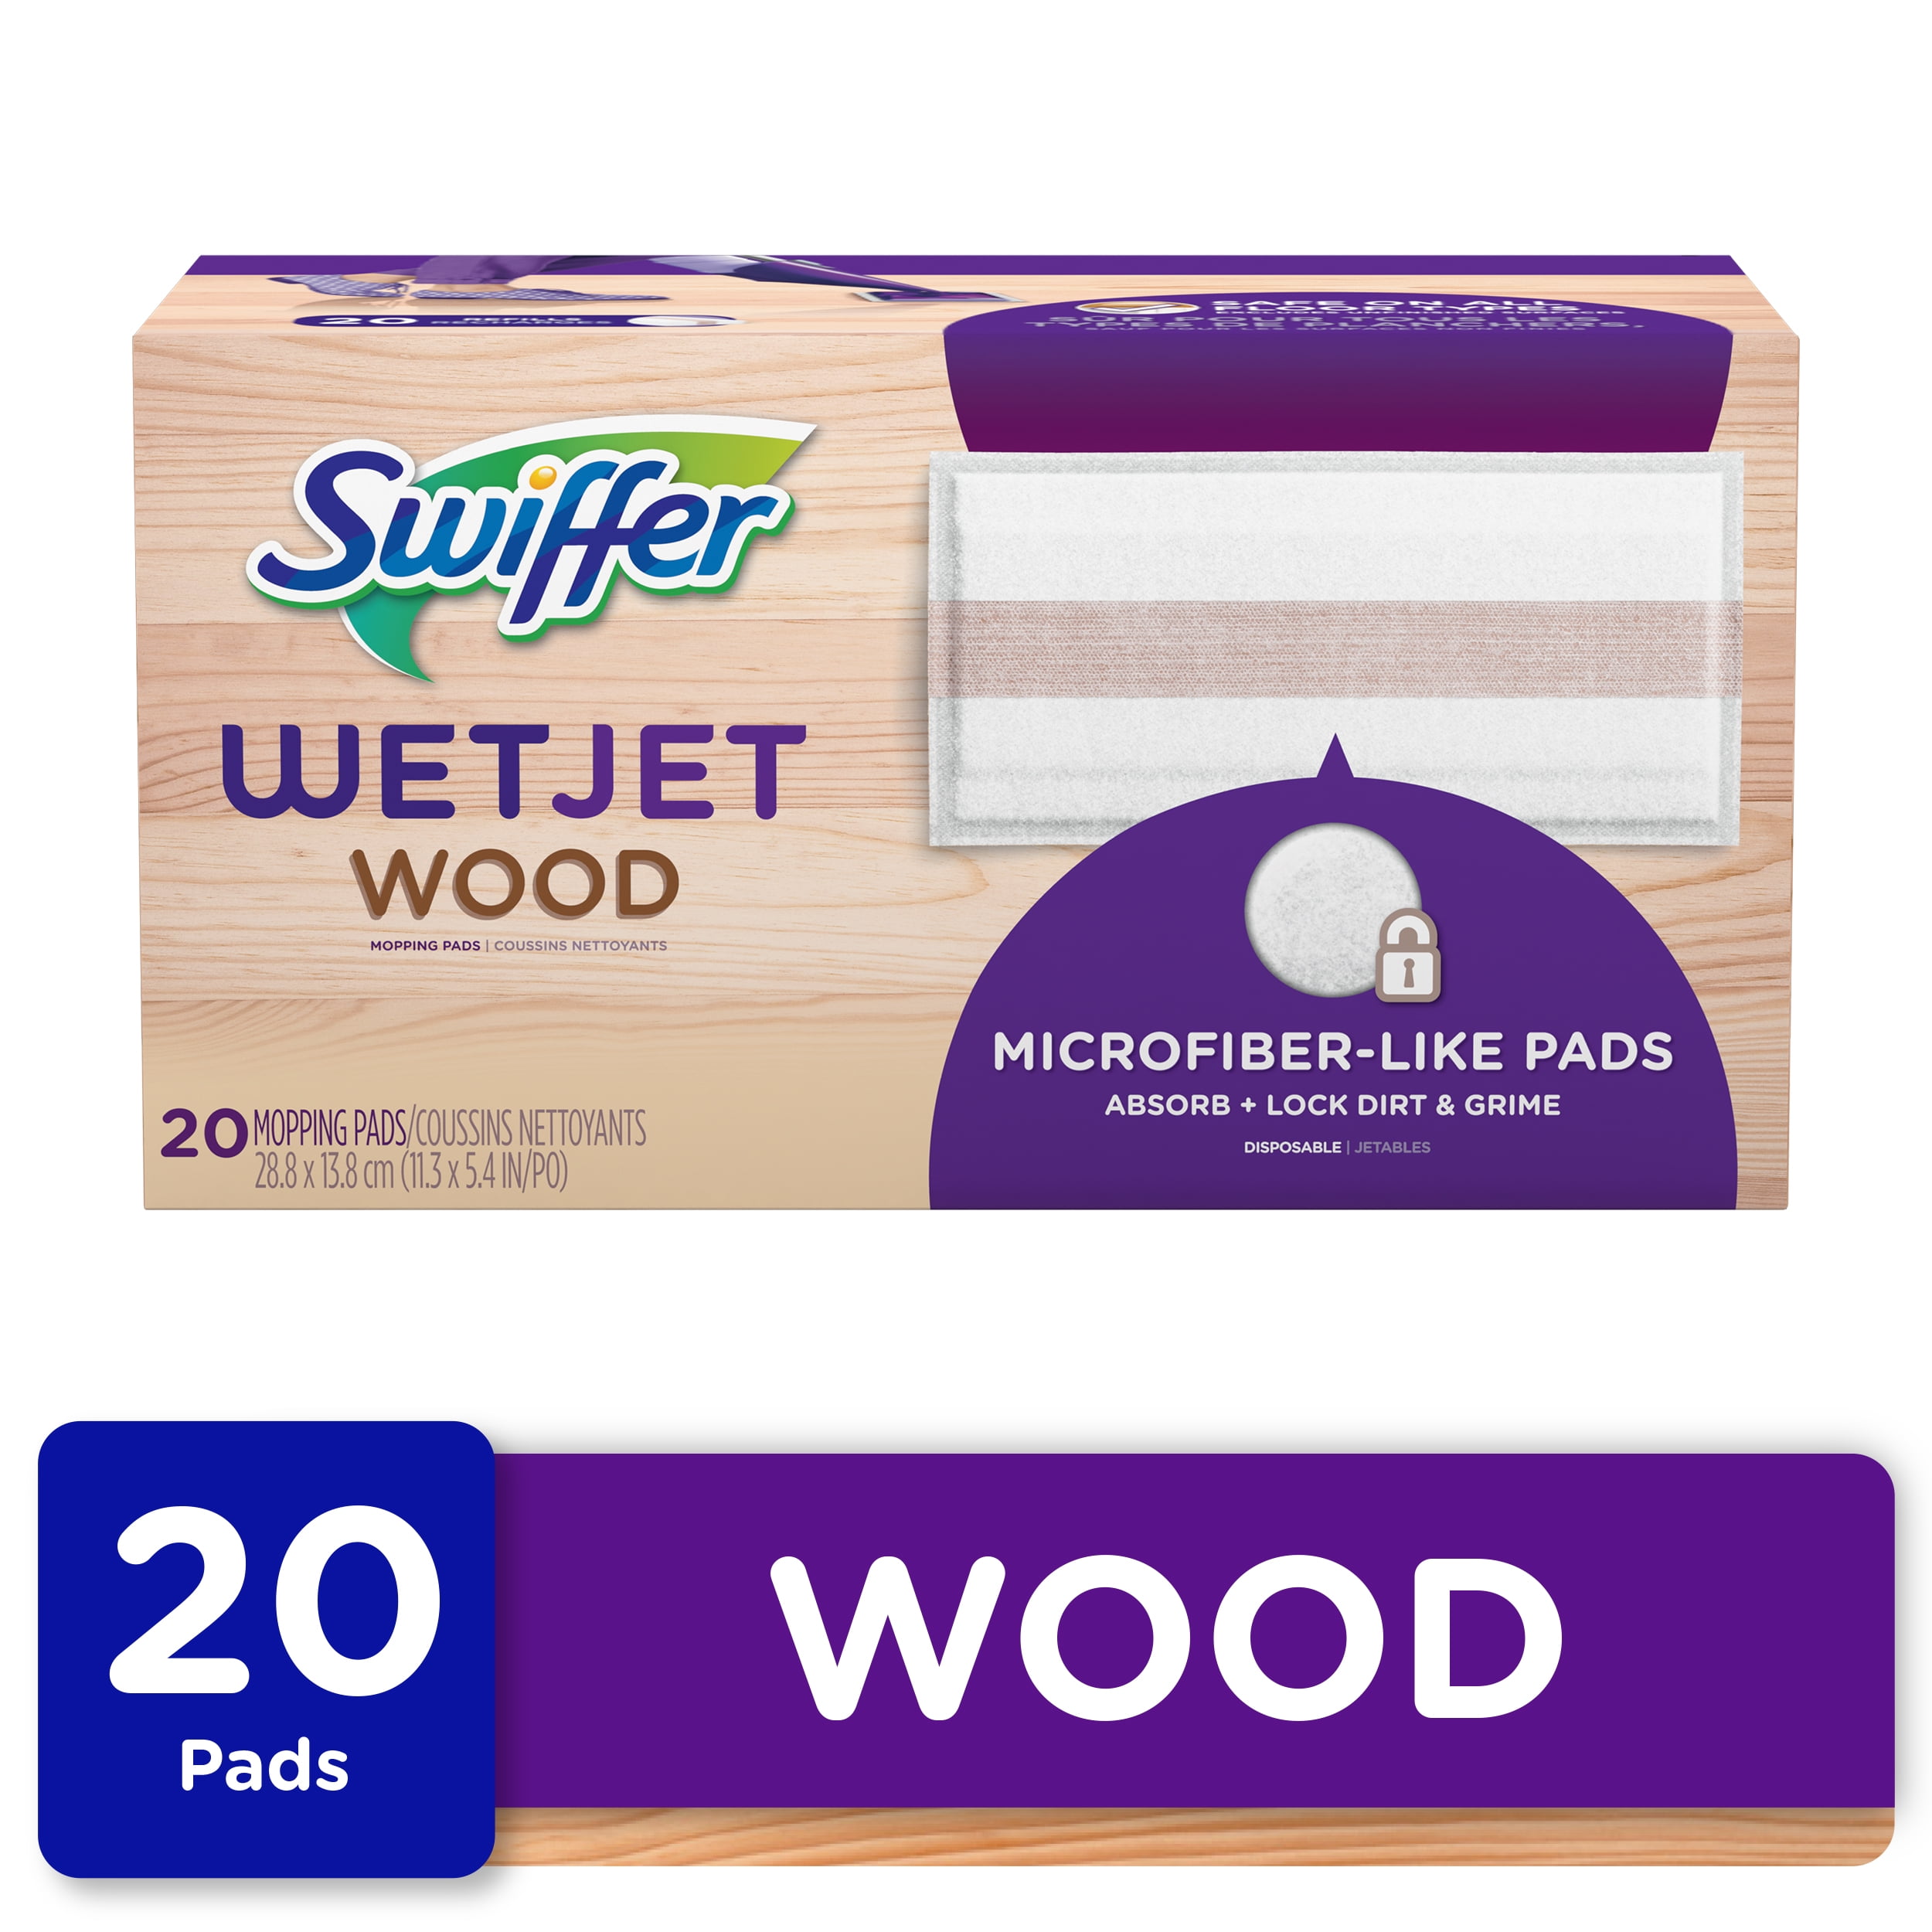 Swiffer Wetjet Wood Mop Pad Refills 20, Swiffer Wet Jet Hardwood Floor Cleaner